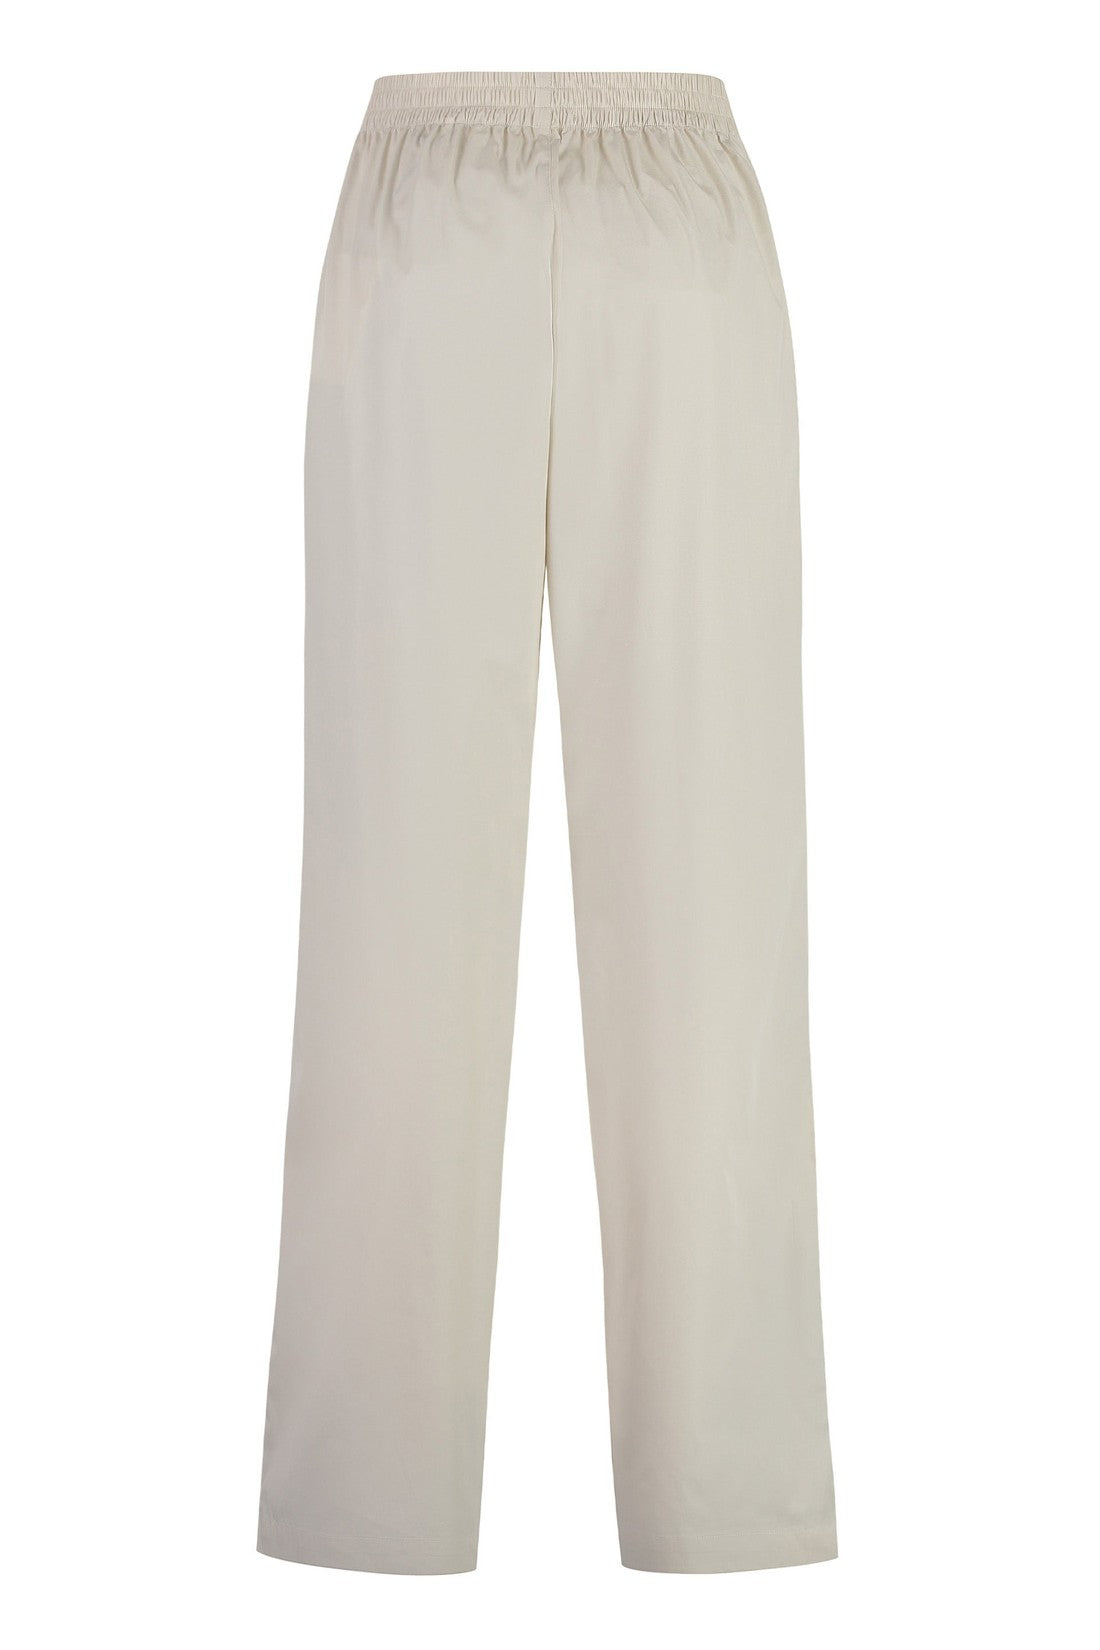 Marant-OUTLET-SALE-Cotton blend trousers-ARCHIVIST